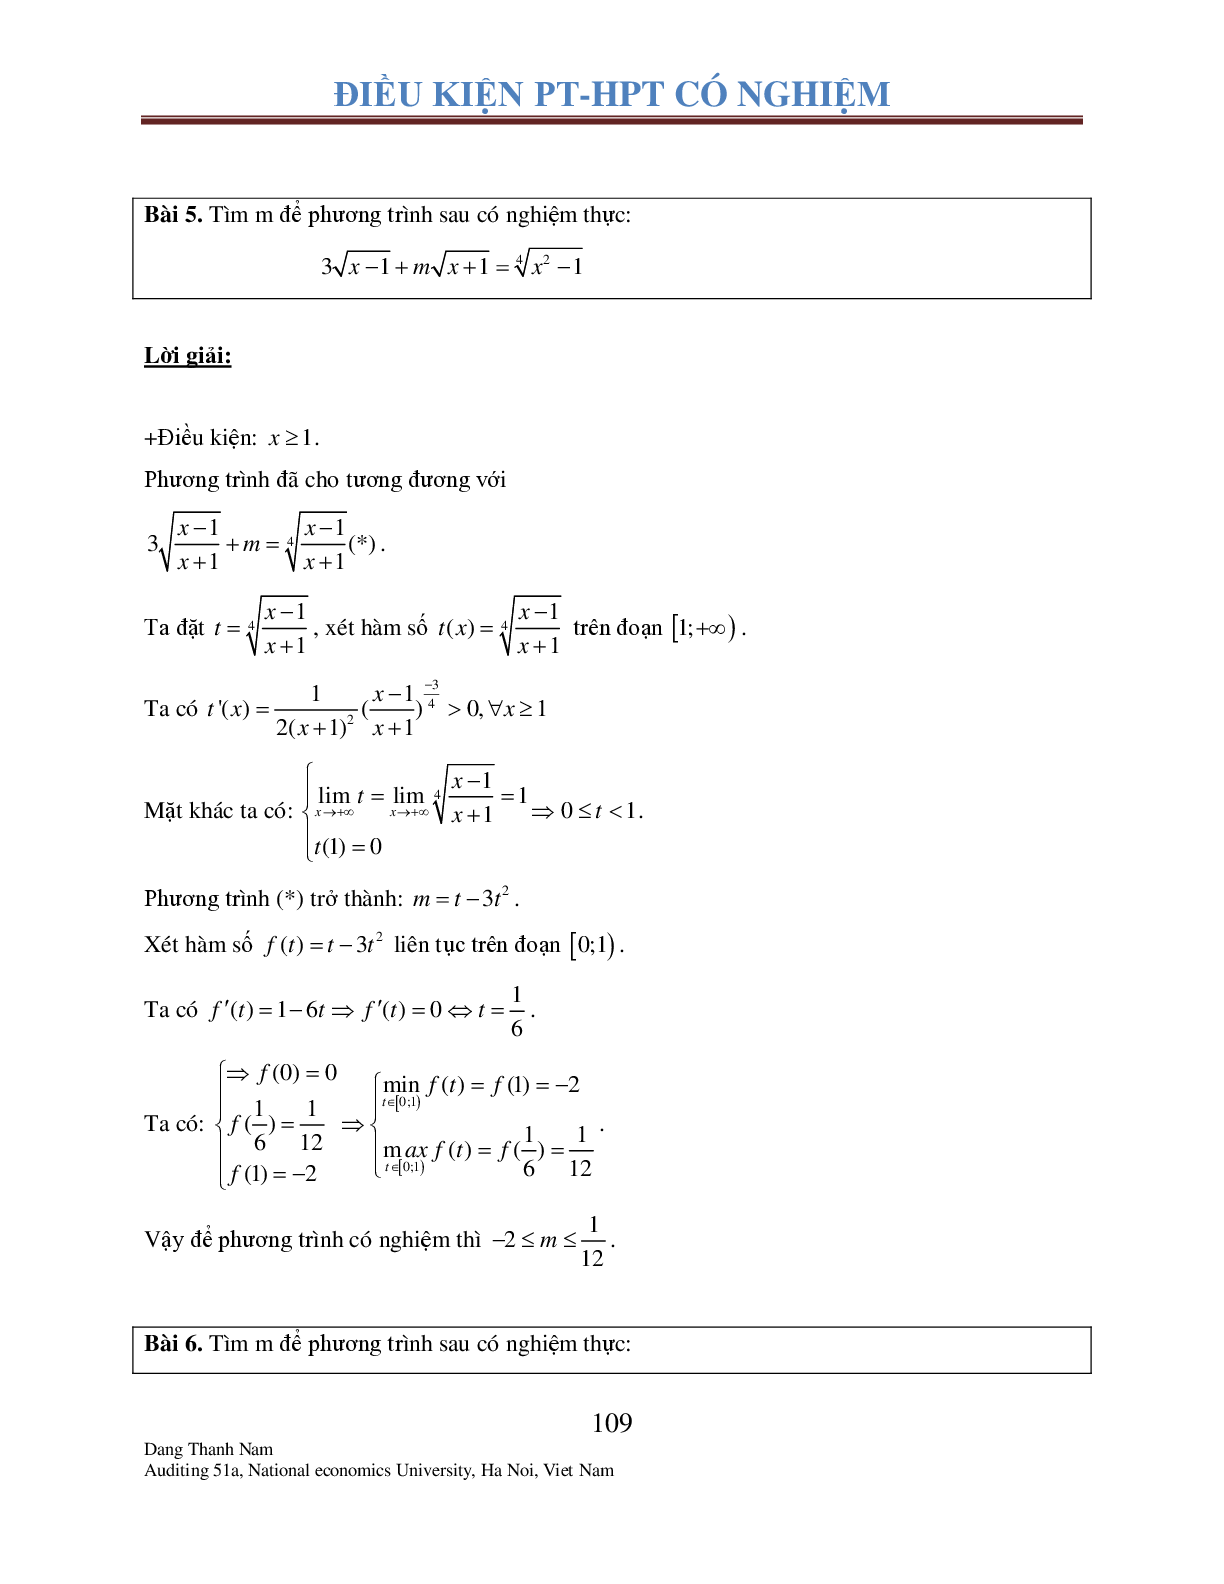 Chuyên đề 2: Tìm điều kiện để Phương trình – Hệ phương trình có nghiệm (trang 8)